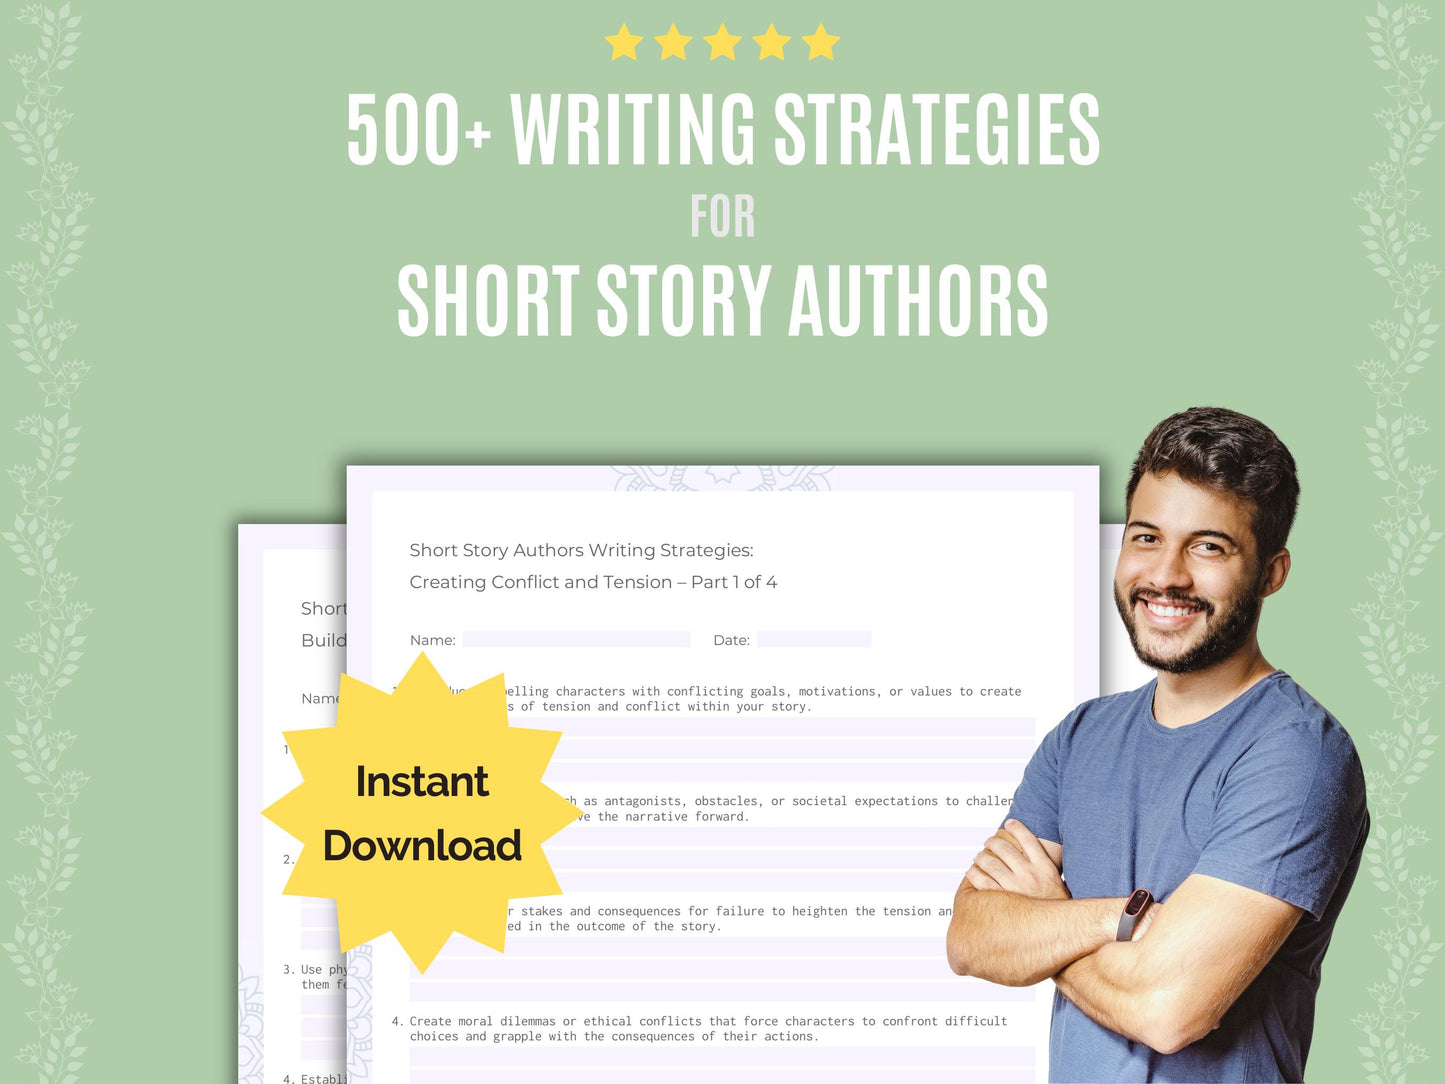 Short Story Authors Writing